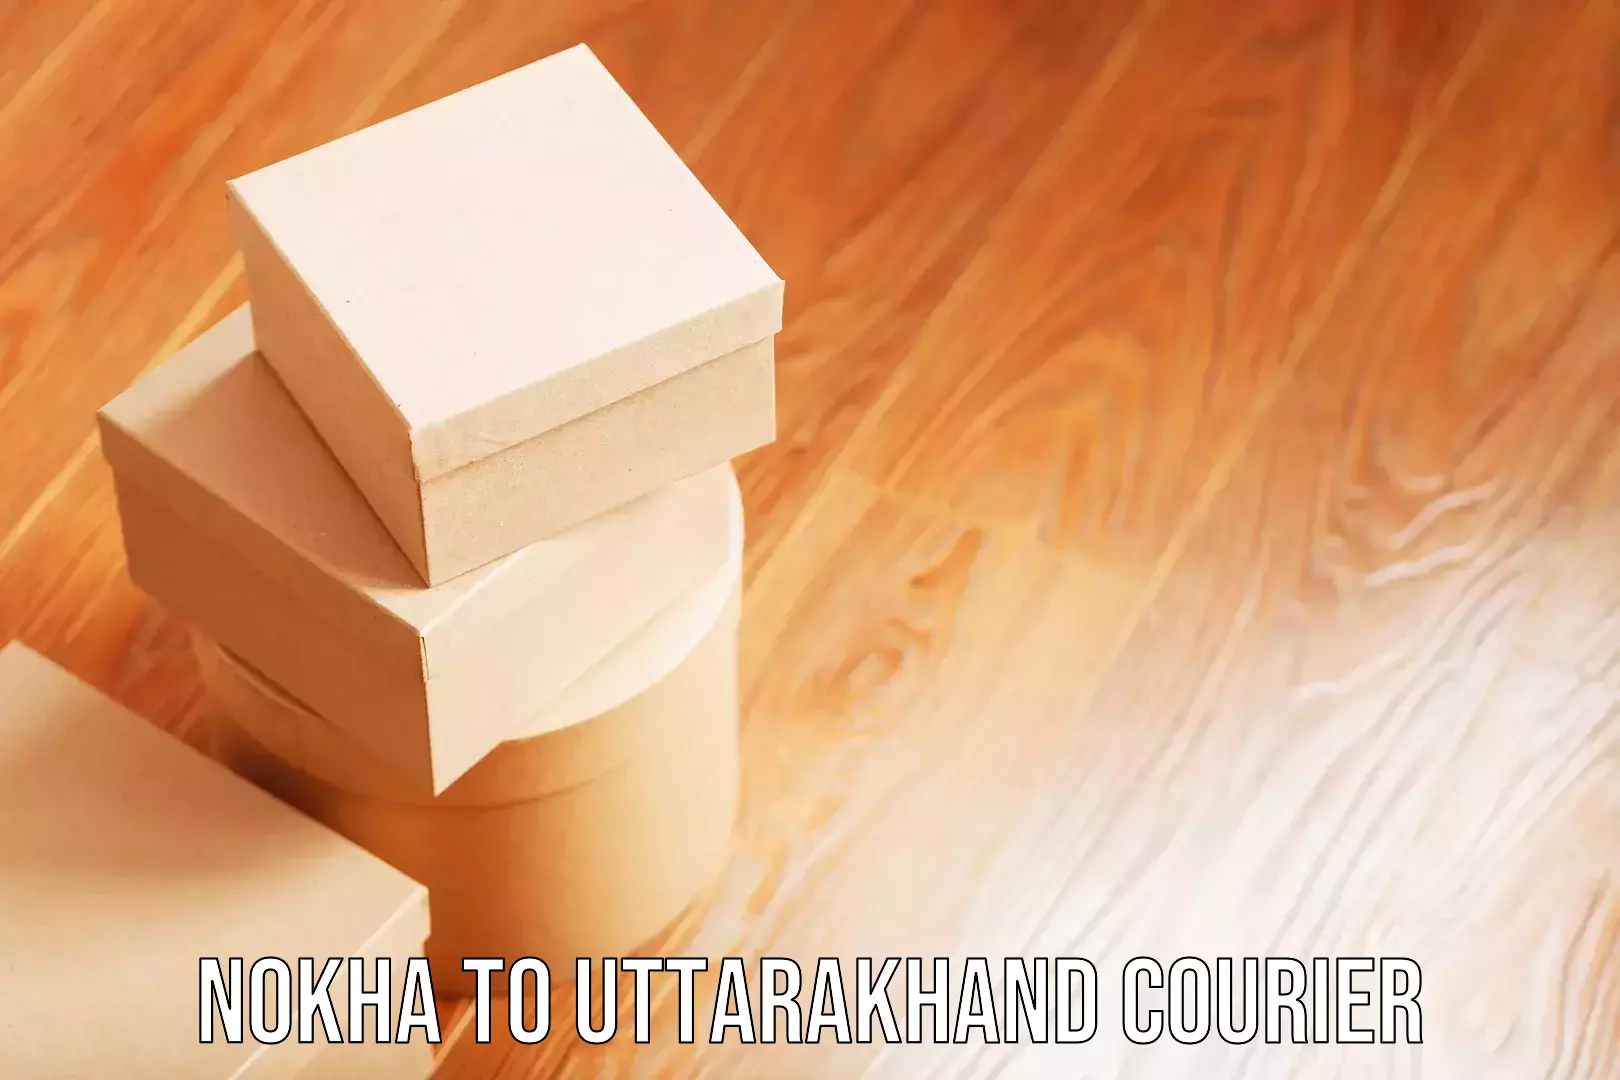 Luggage courier logistics Nokha to Uttarakhand